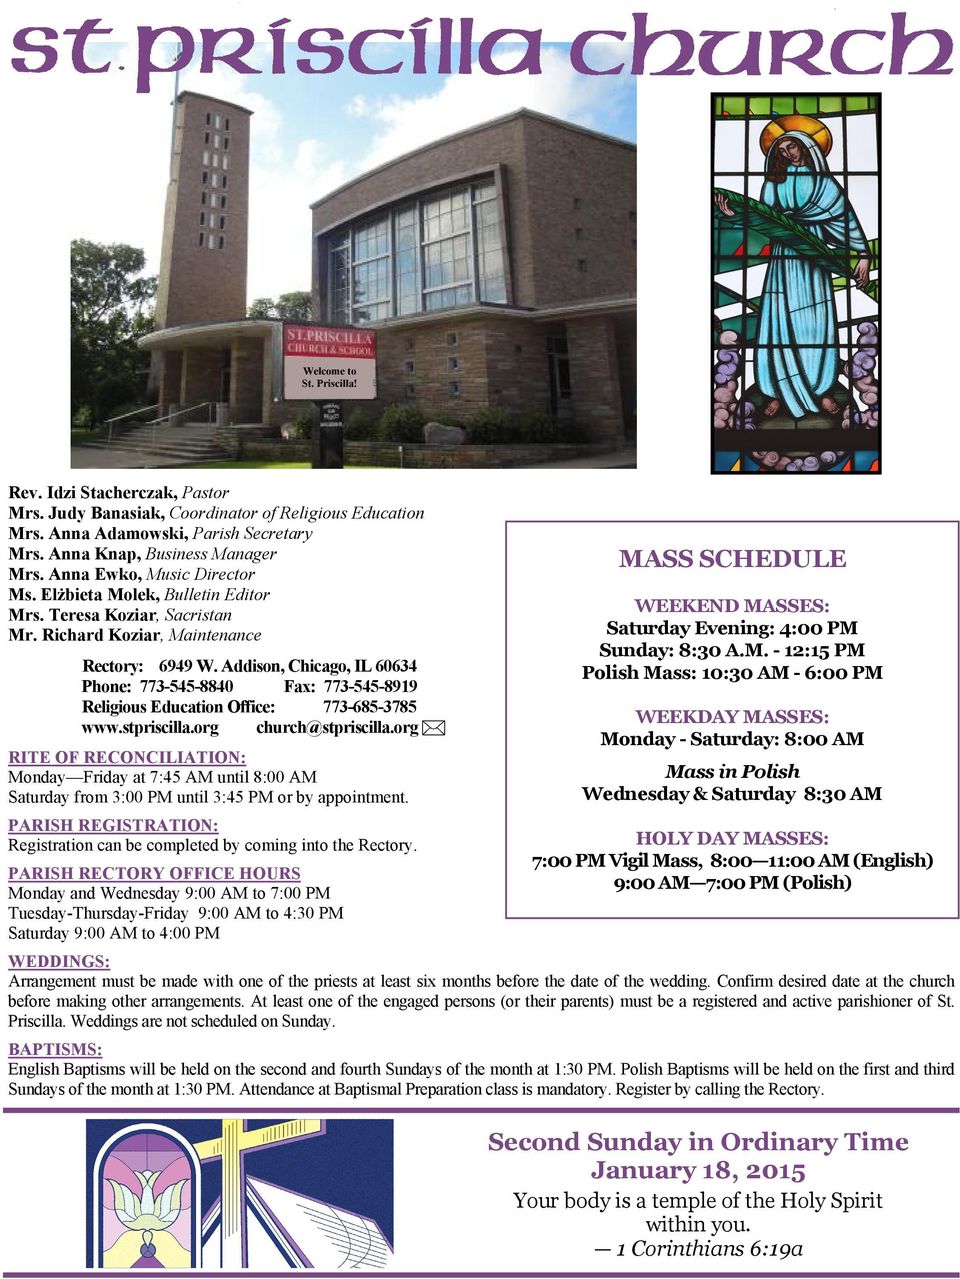 Addison, Chicago, IL 60634 Phone: 773-545-8840 Fax: 773-545-8919 Religious Education Office: 773-685-3785 www.stpriscilla.org church@stpriscilla.